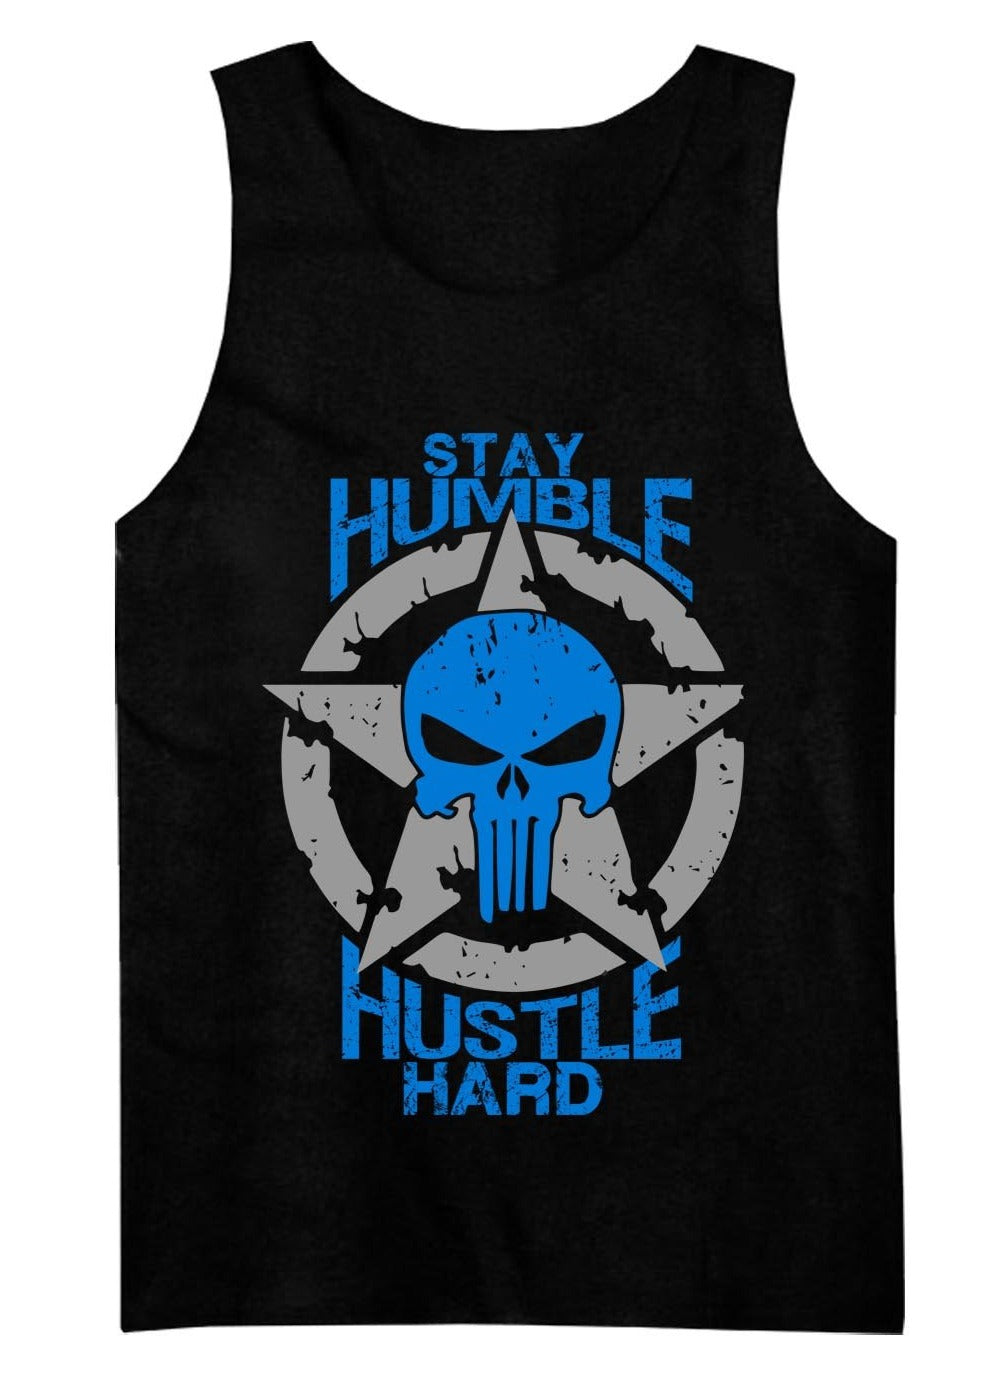 Restez humble Hustle Hard Tank 